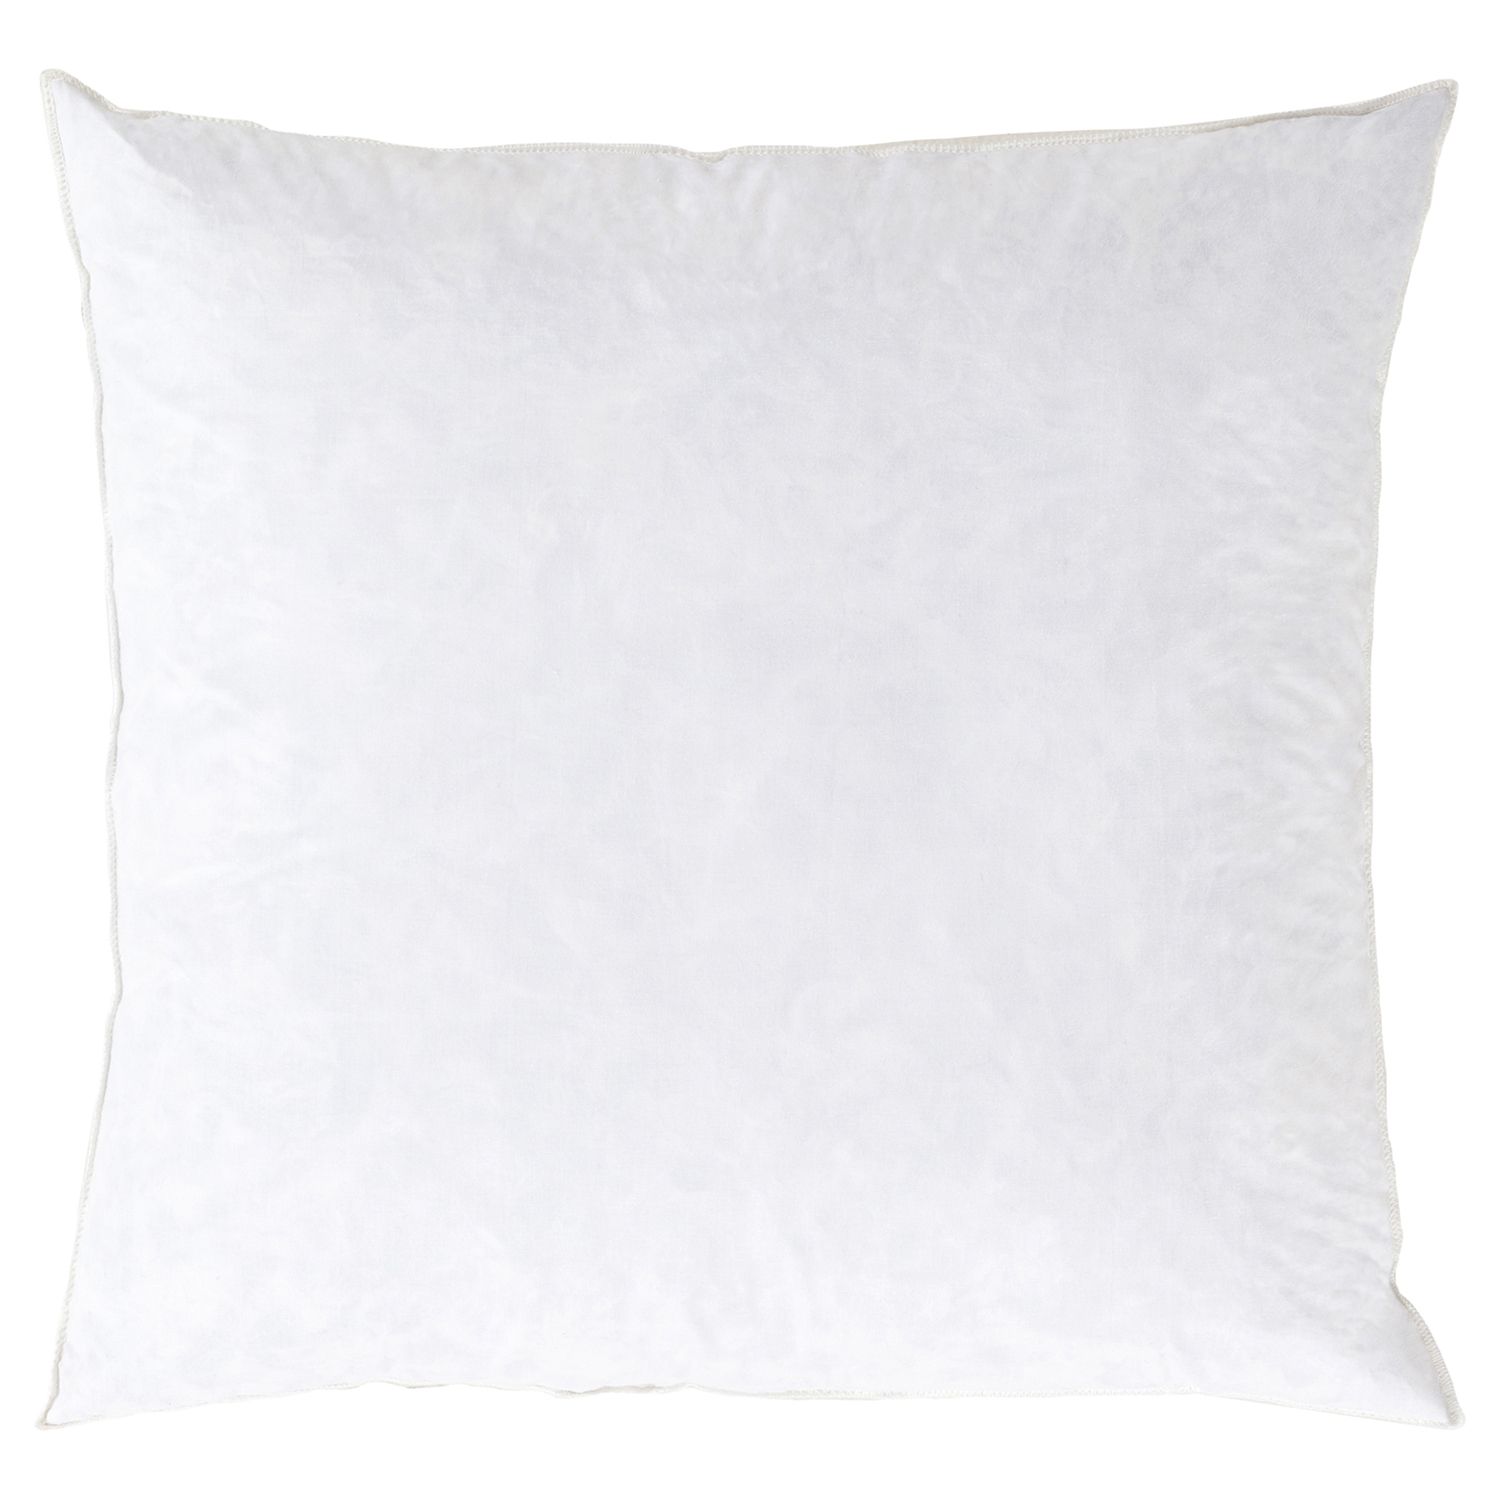 throw pillows under $10